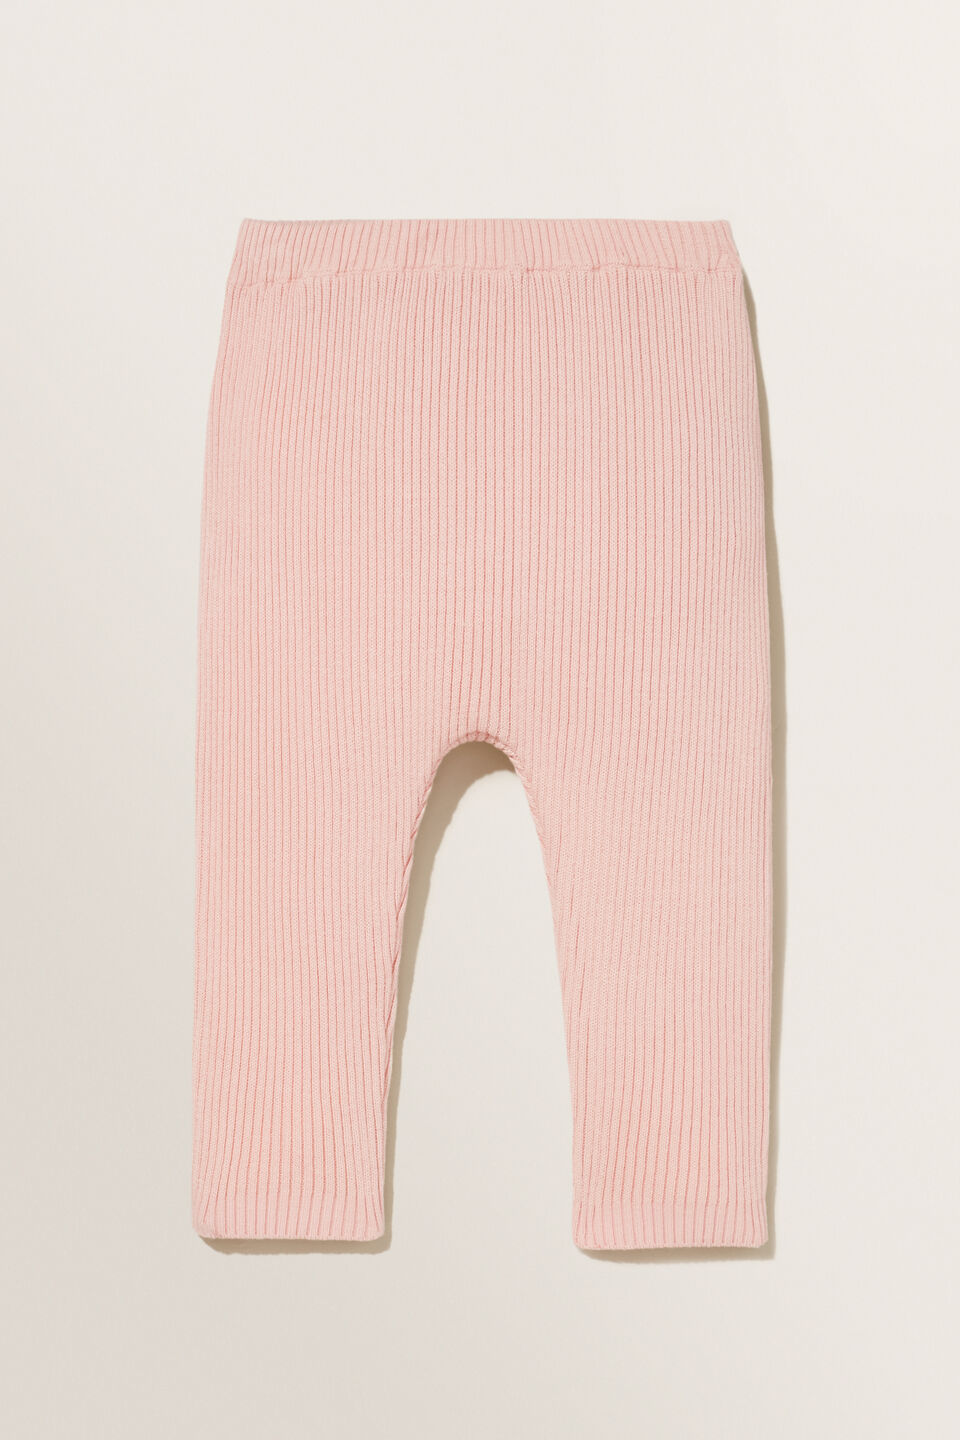 Rib Knit Pants  Pink Quartz  hi-res